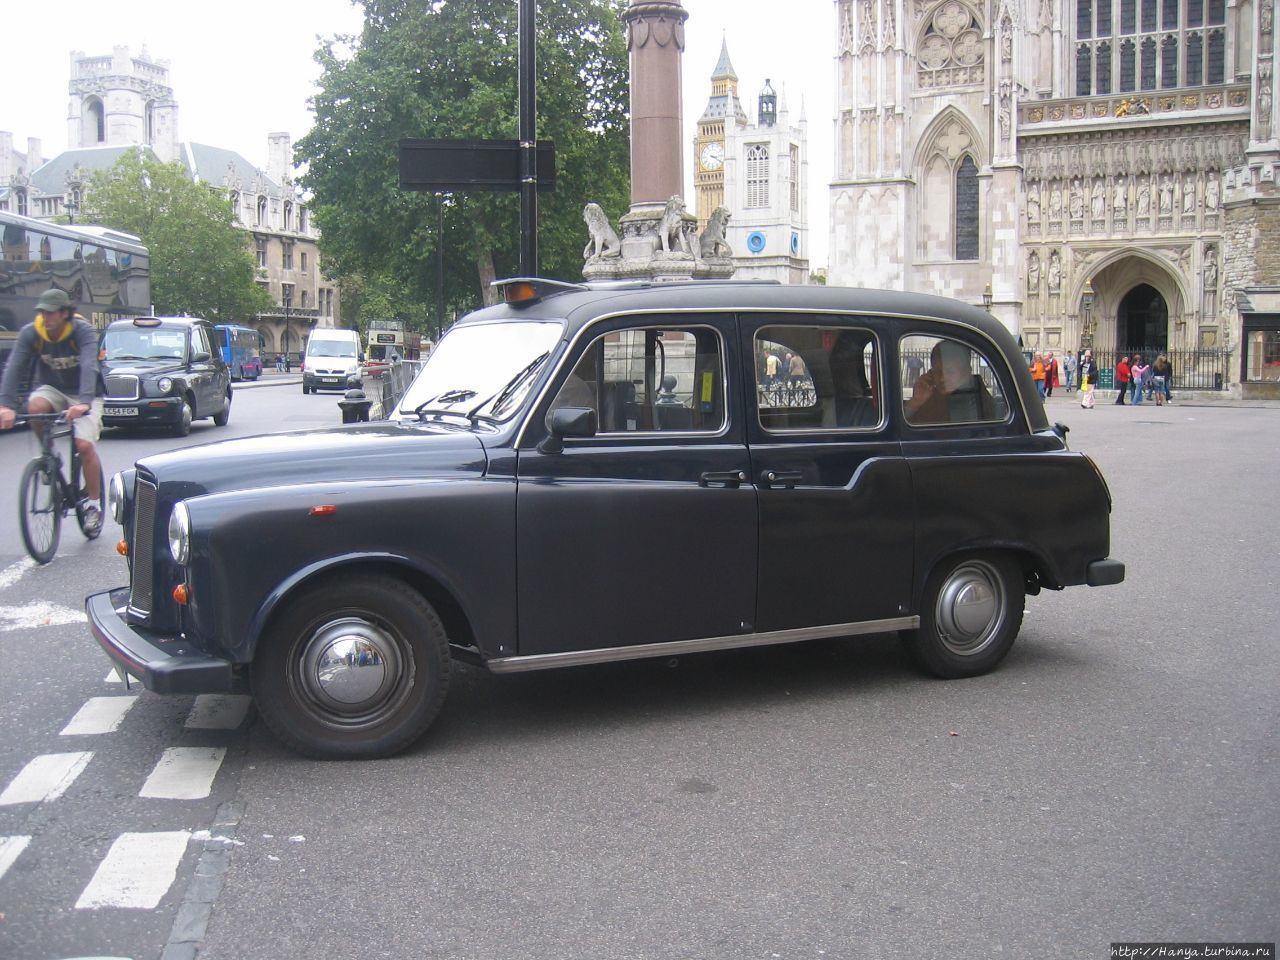 Лондон. Вестминстерское Аббатство. Знаменитый лондонский кэб-такси Лондон, Великобритания